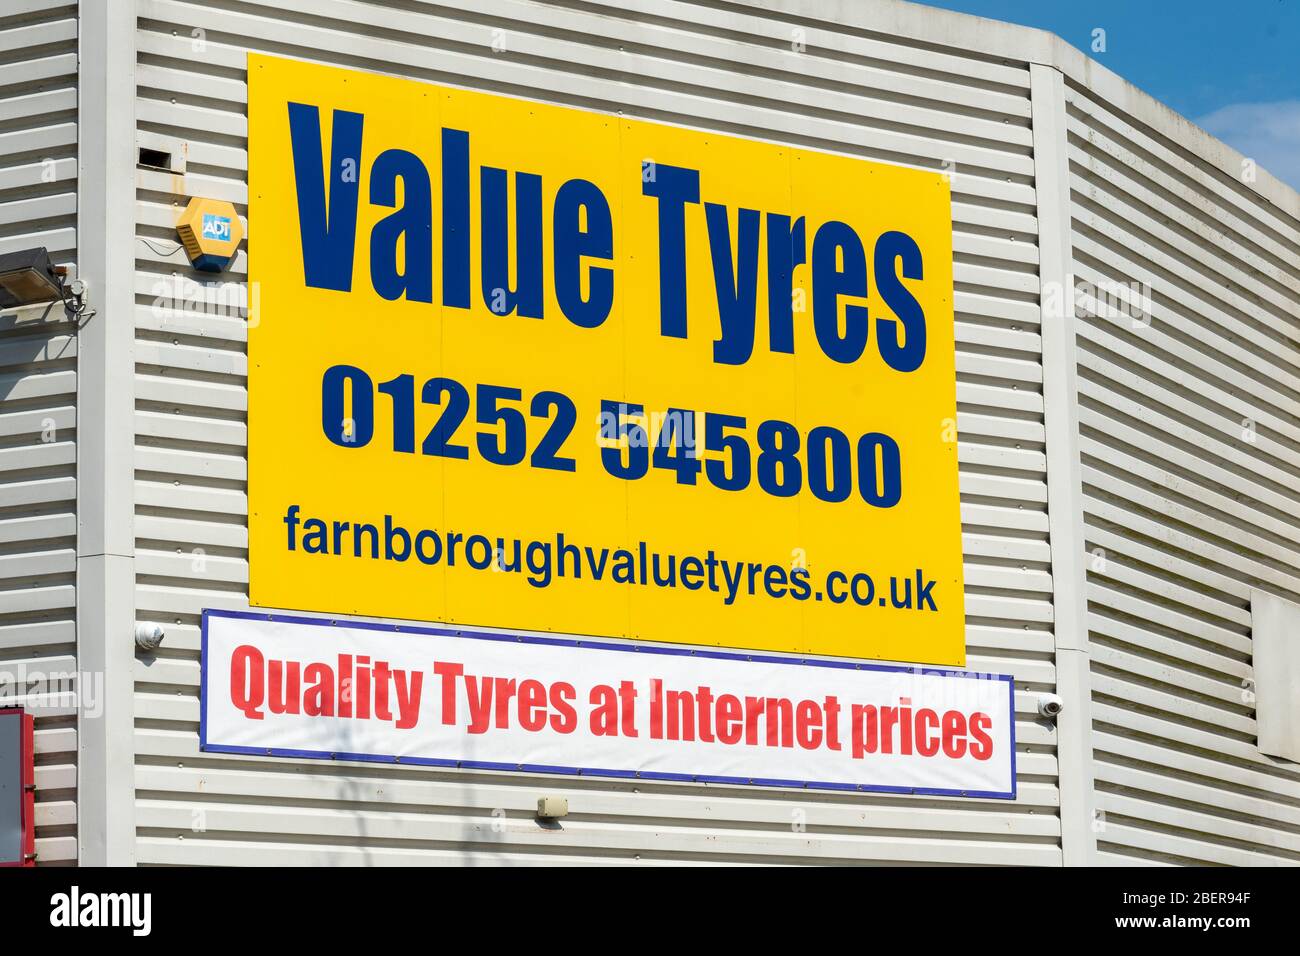 Value Tyres Business and Signair, une entreprise qui vend et monte des pneus bon marché, Royaume-Uni Banque D'Images